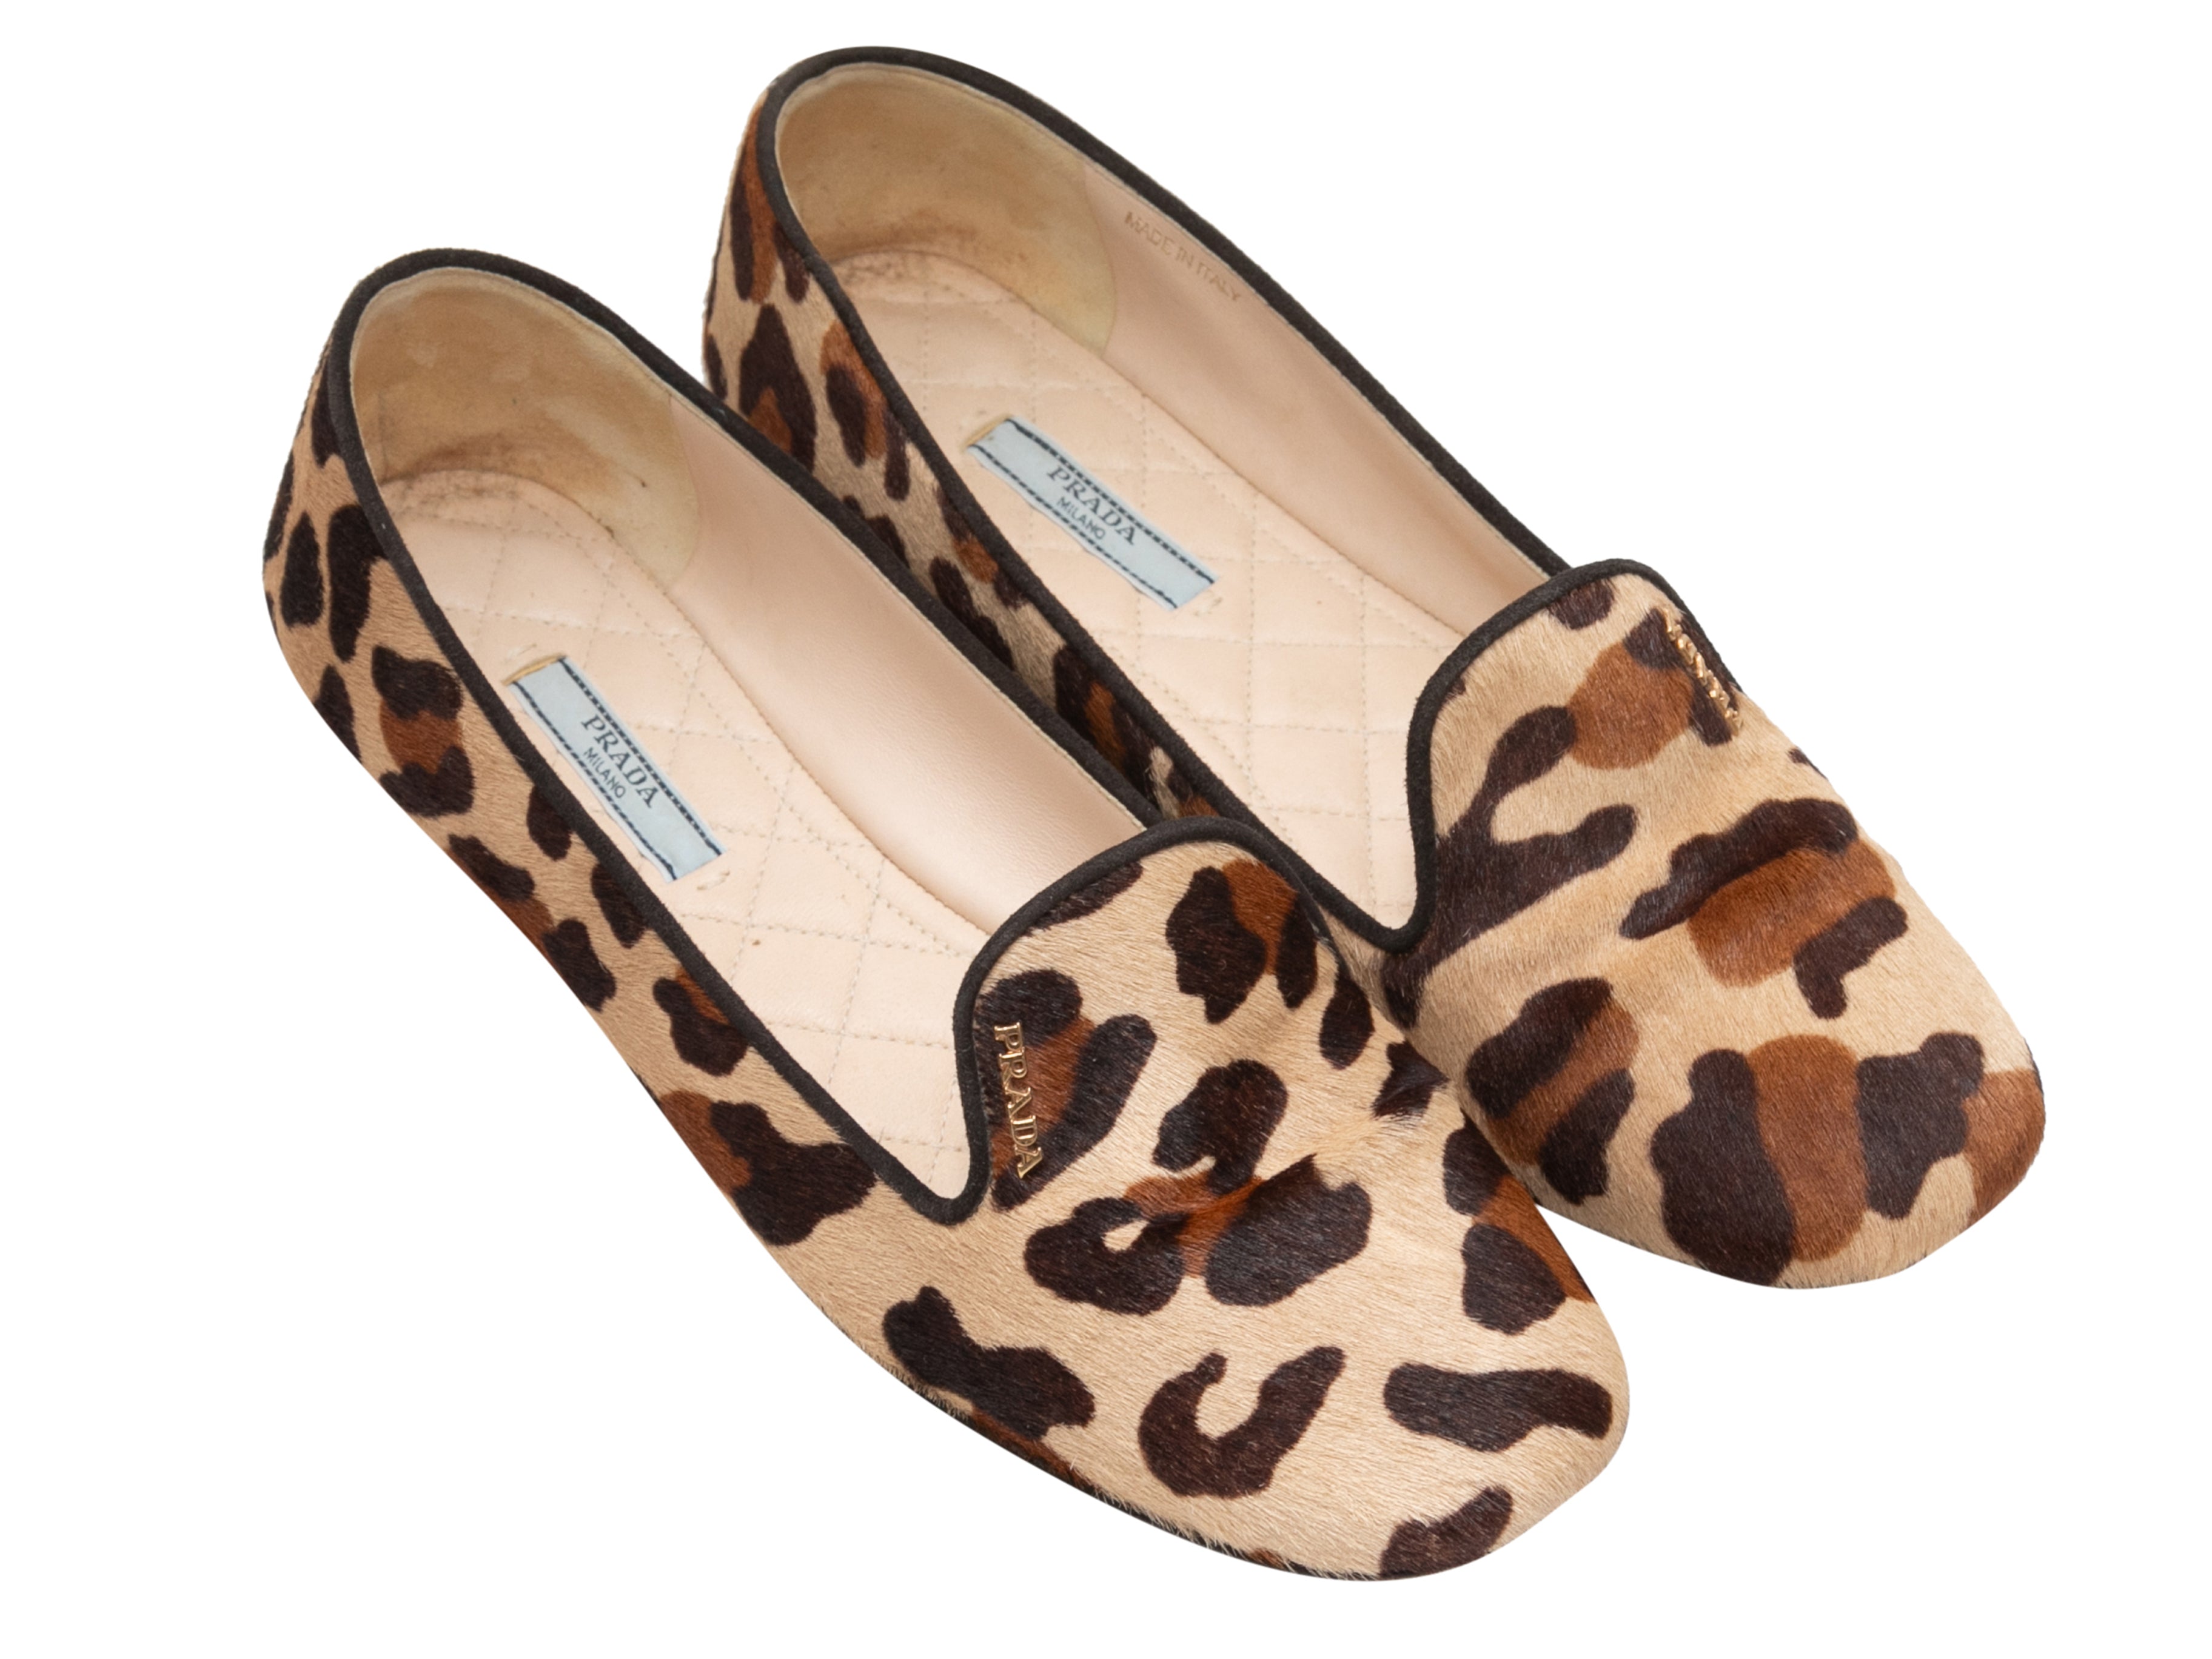 Tan & Multicolor Leopard Print Ponyhair Flats Size 39